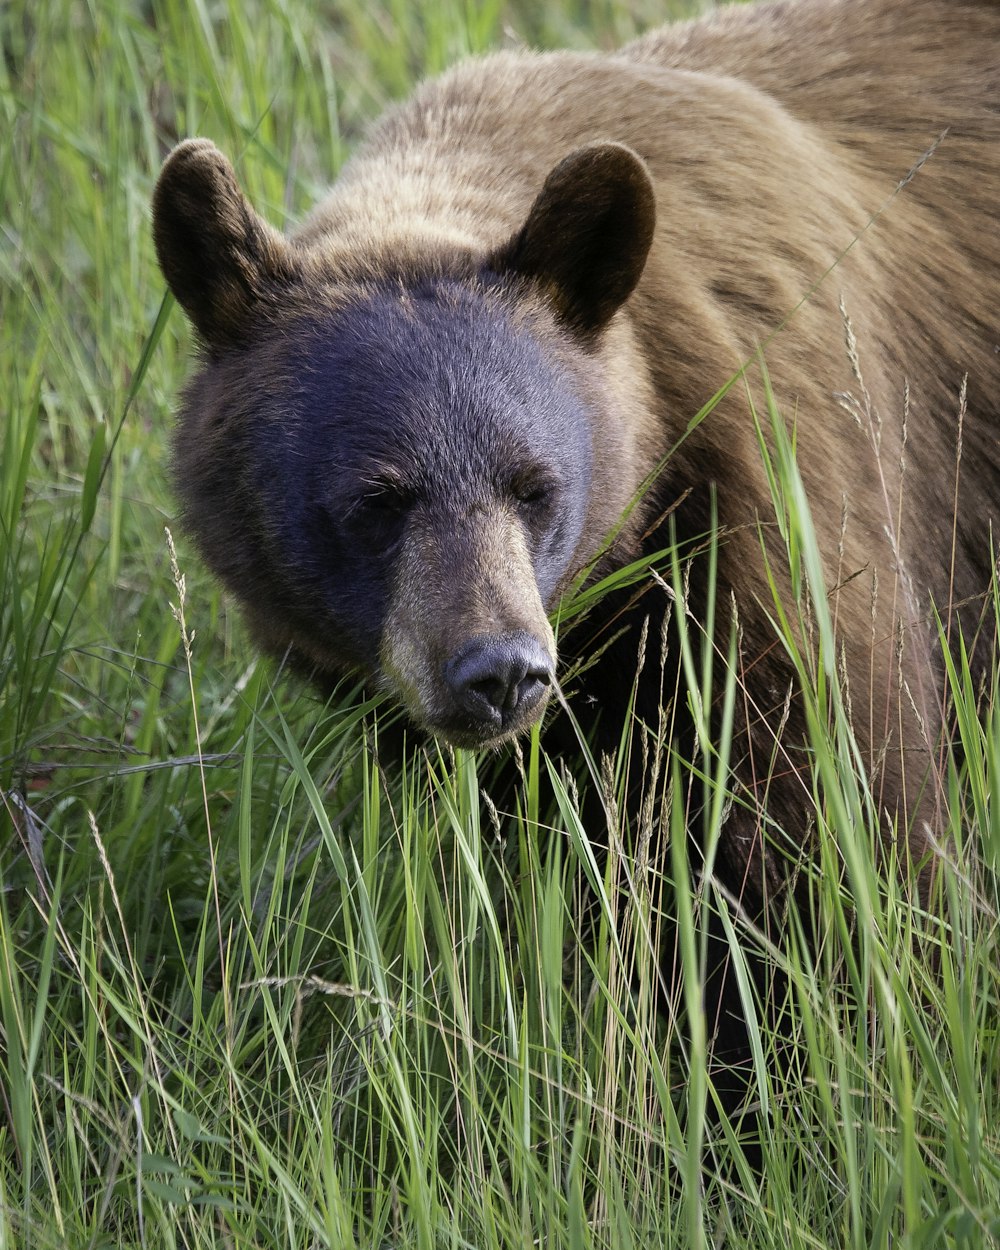 a large brown bear walking through a lush green field